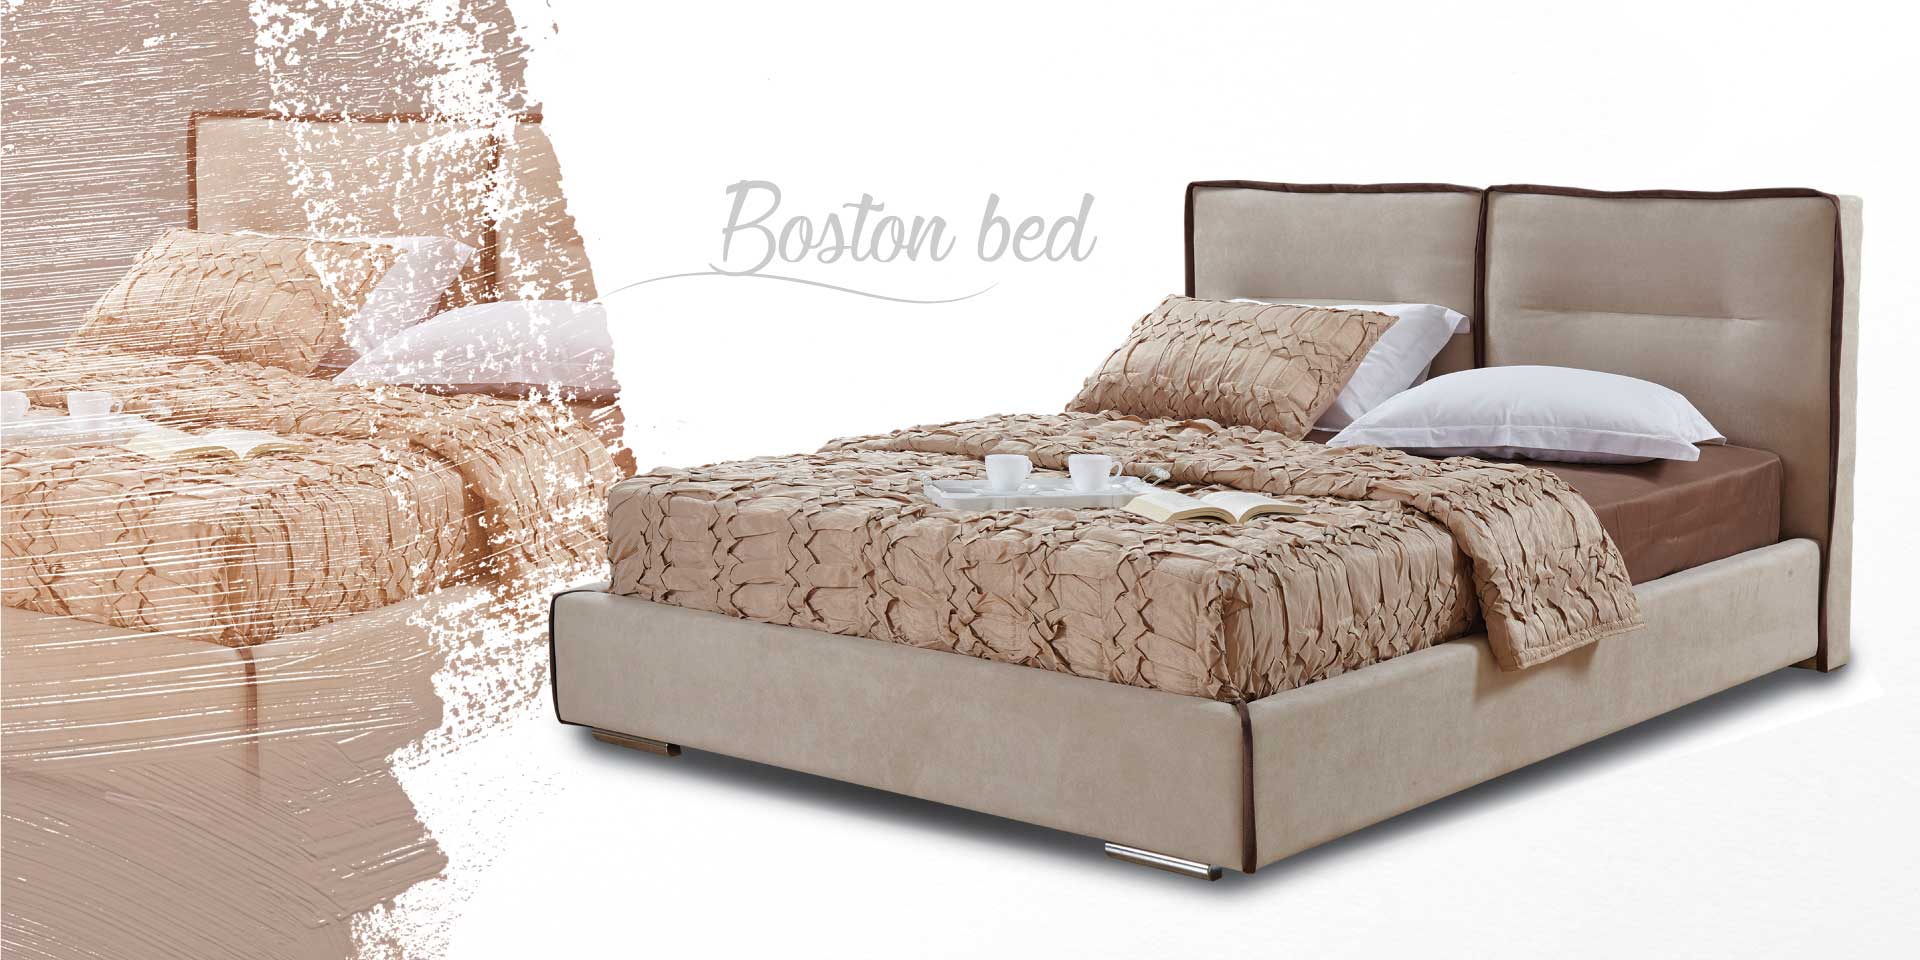 Υφασμάτινο κρεβάτι Boston